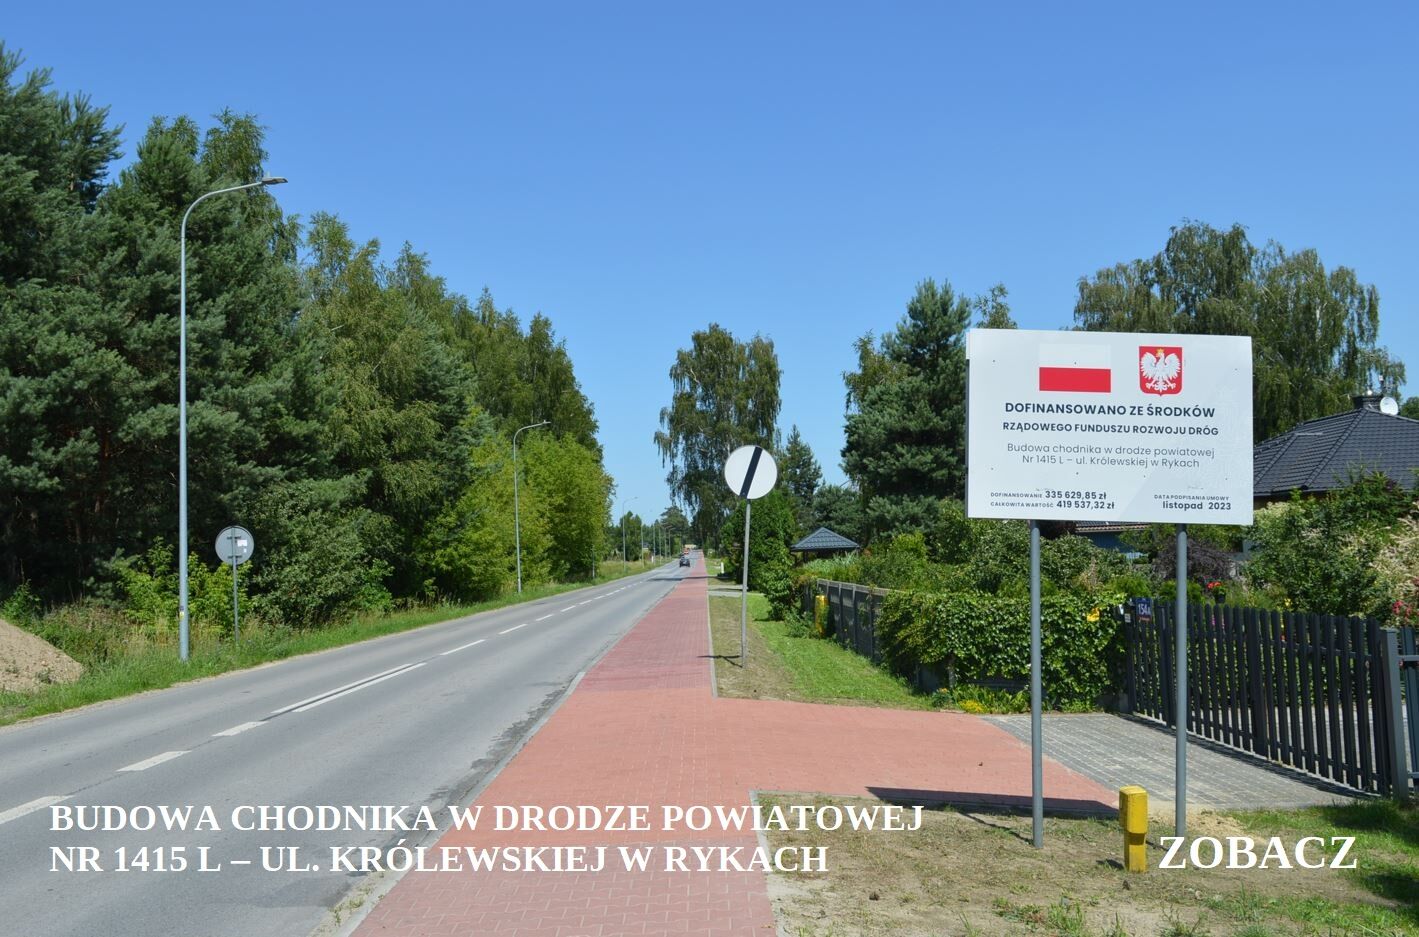 Droga asfaltowa z czerwonym chodnikiem biegnącym wzdłuż, otoczona zielenią z tablicą informacyjną po prawej stronie i znakiem drogowym.